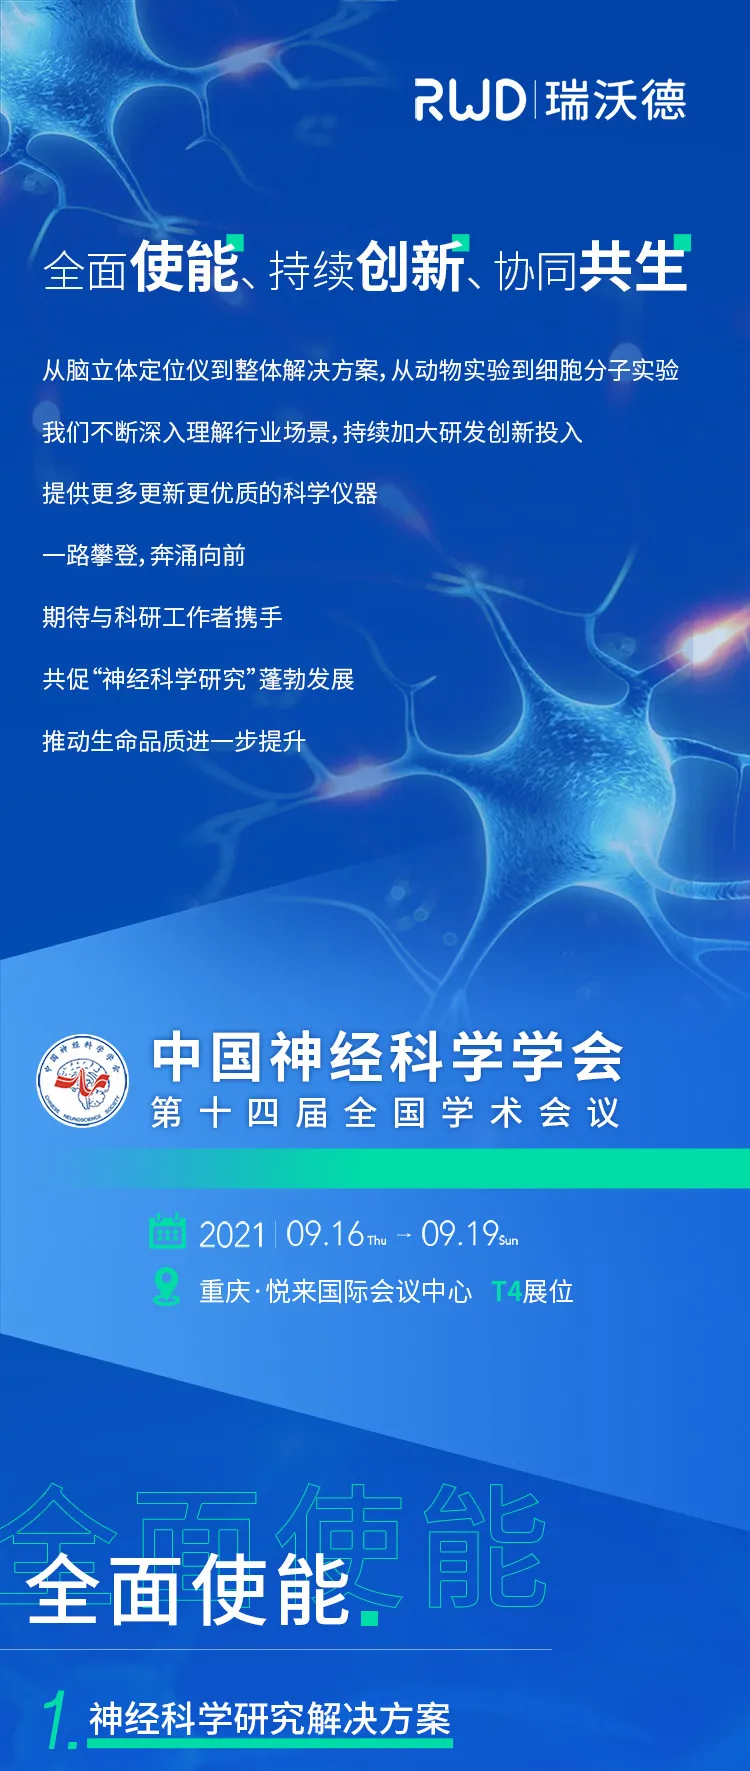 会议邀请︱瑞沃德<em>与您相约</em>中国神经科学学会第十四届全国<em>学术</em>会议